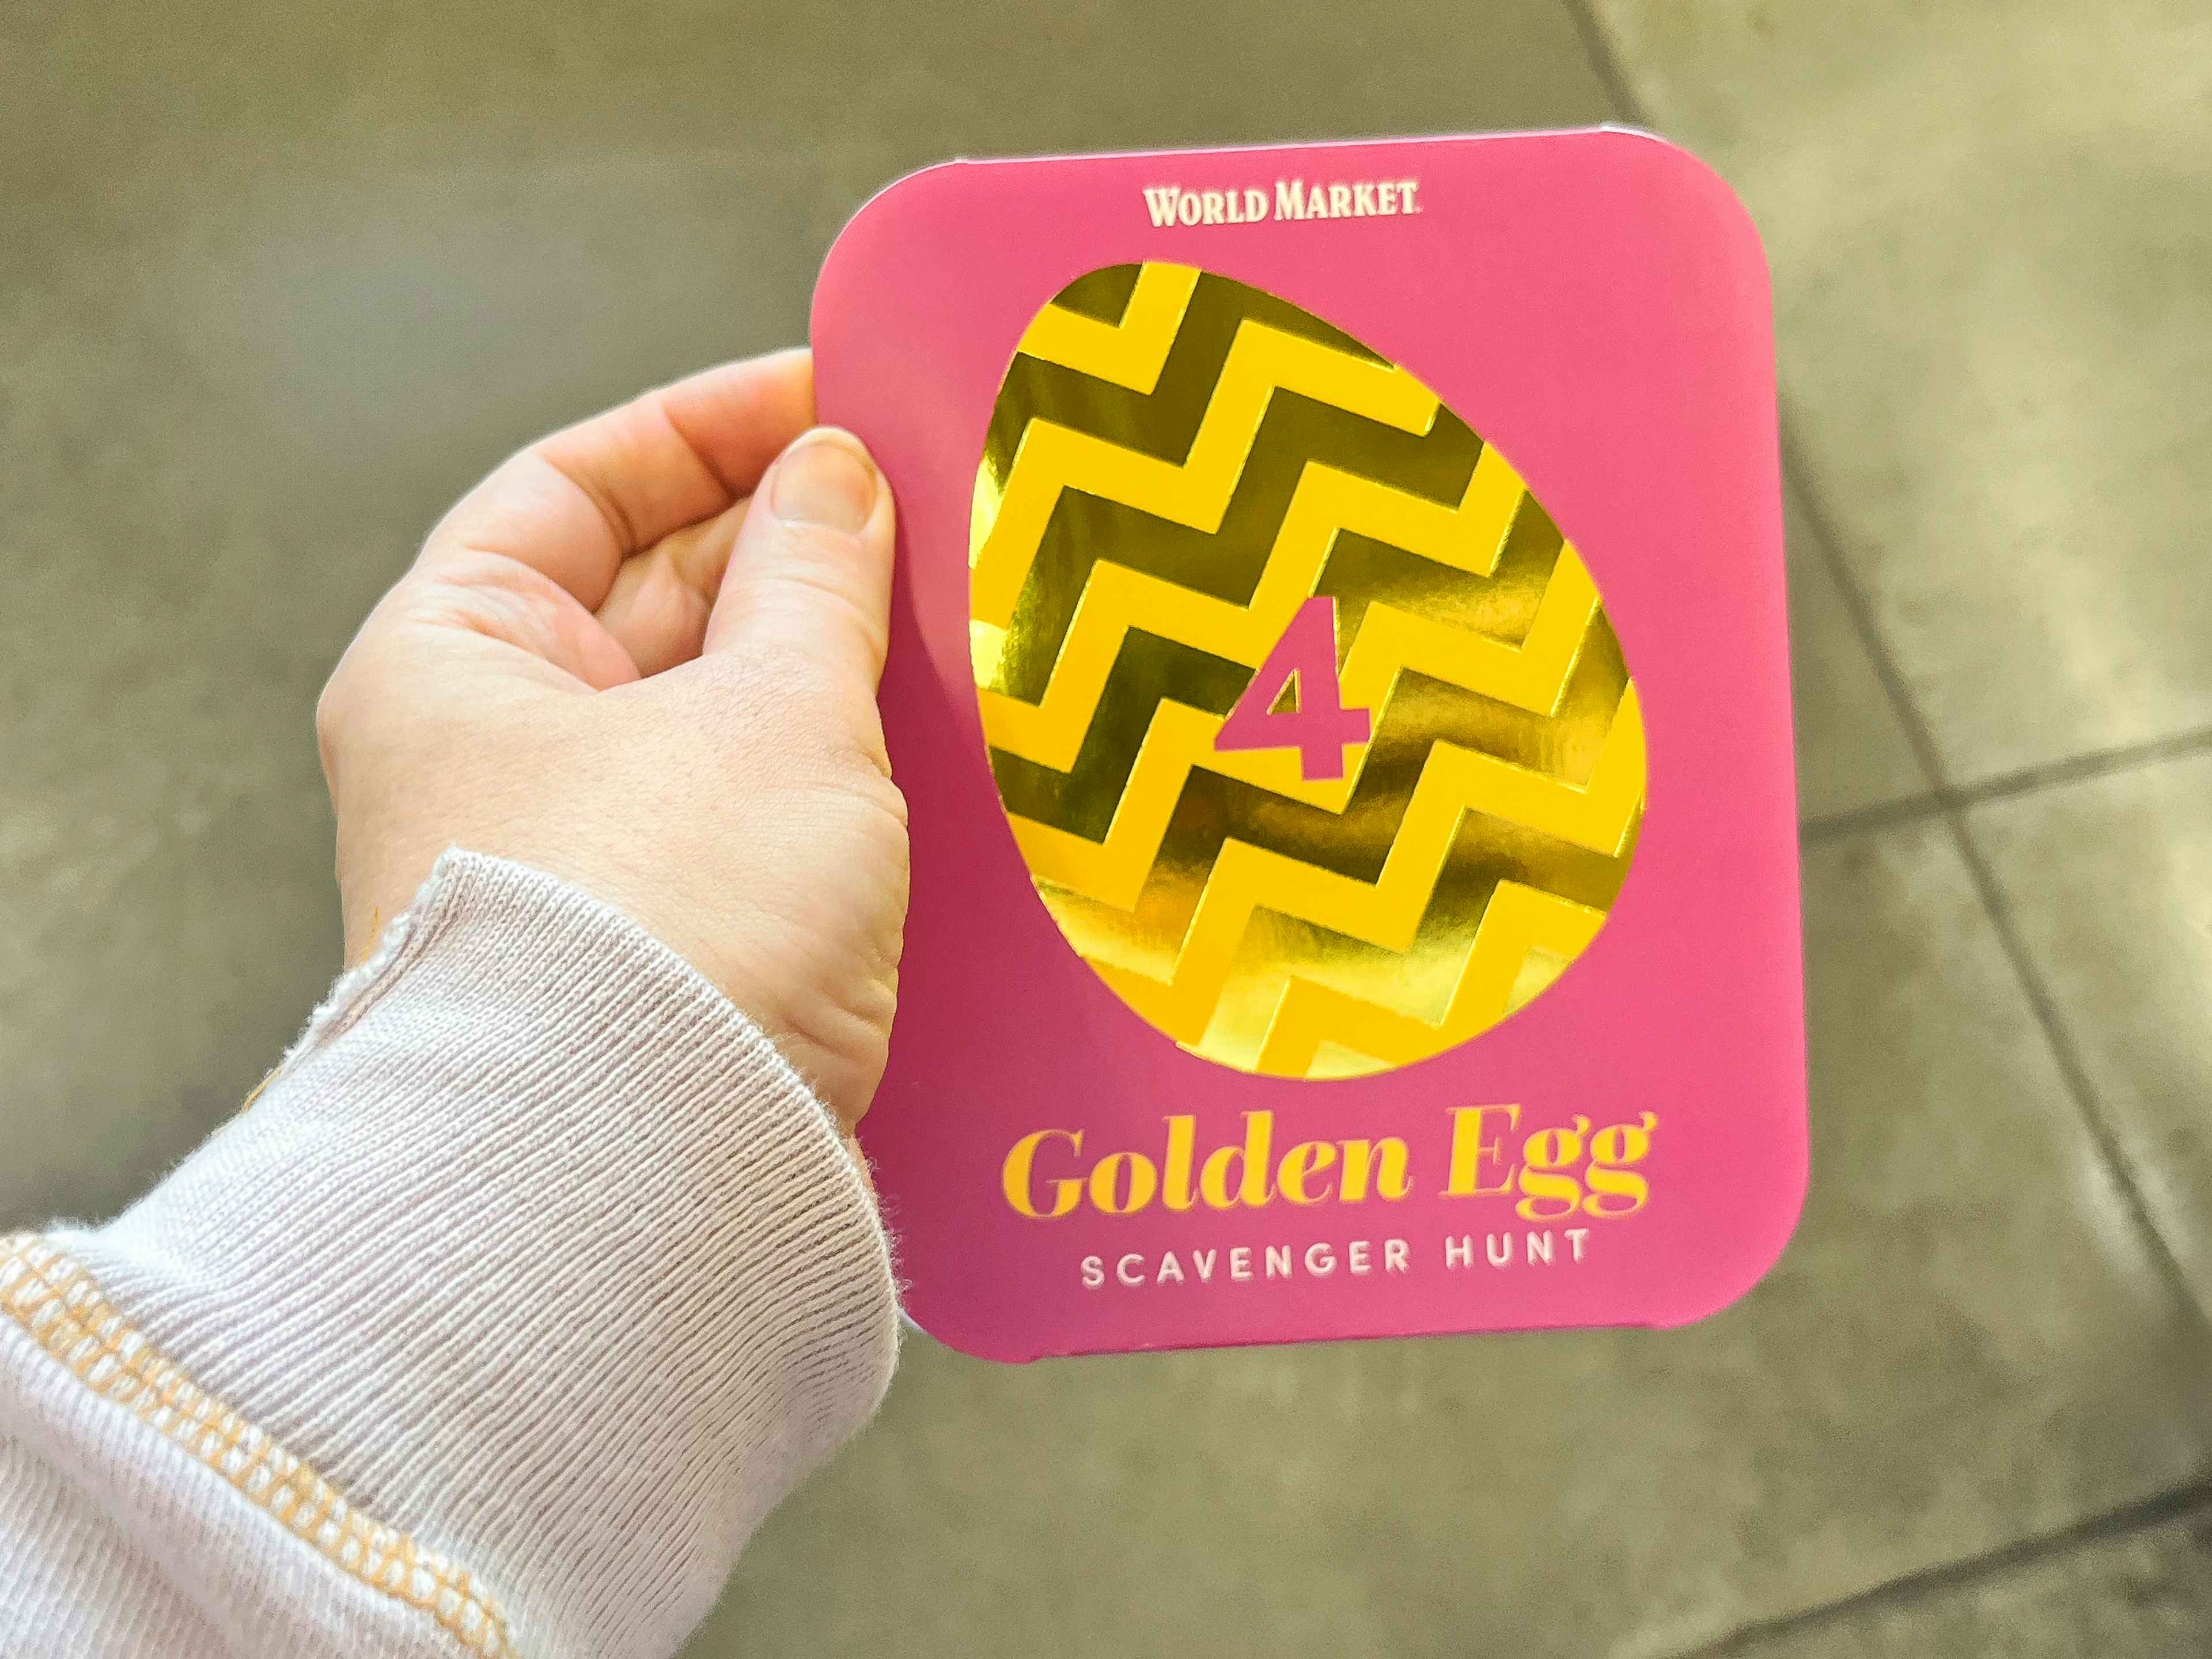 world-market-golden-egg-scavenger-hunt-found-gift-card-prize-kcl-3